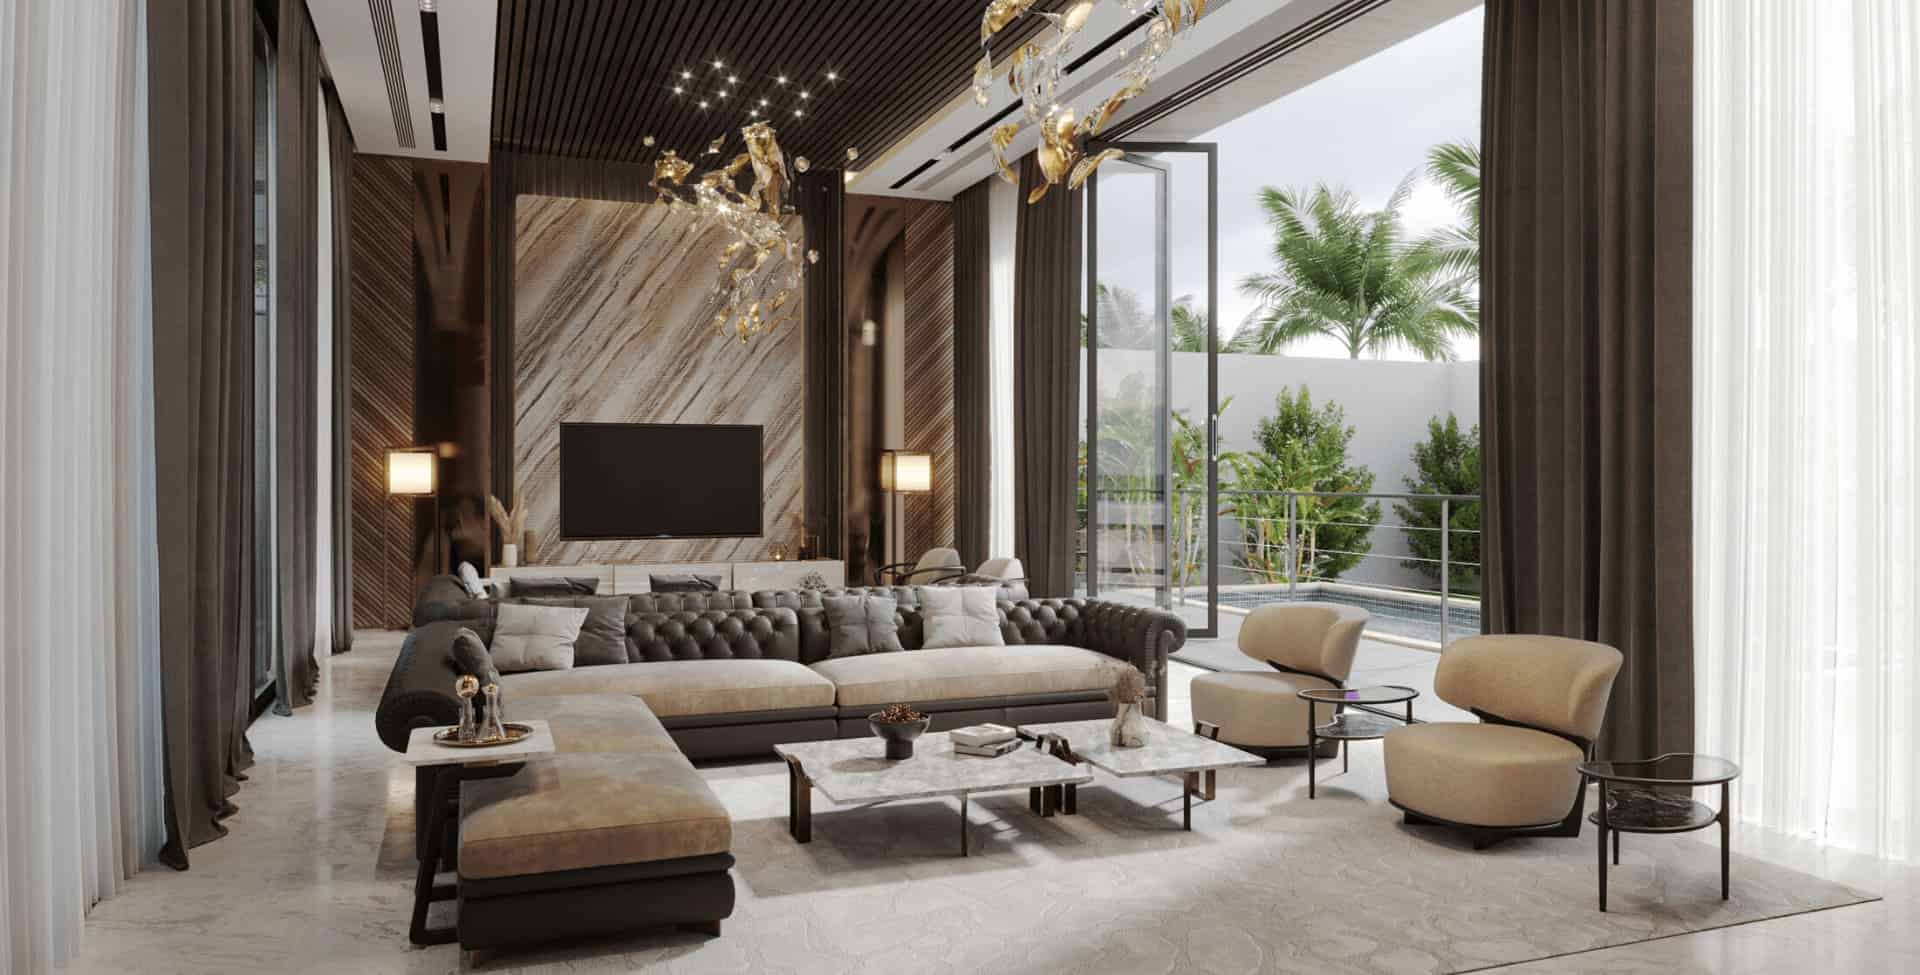 Best Interior Design Firms In Dubai